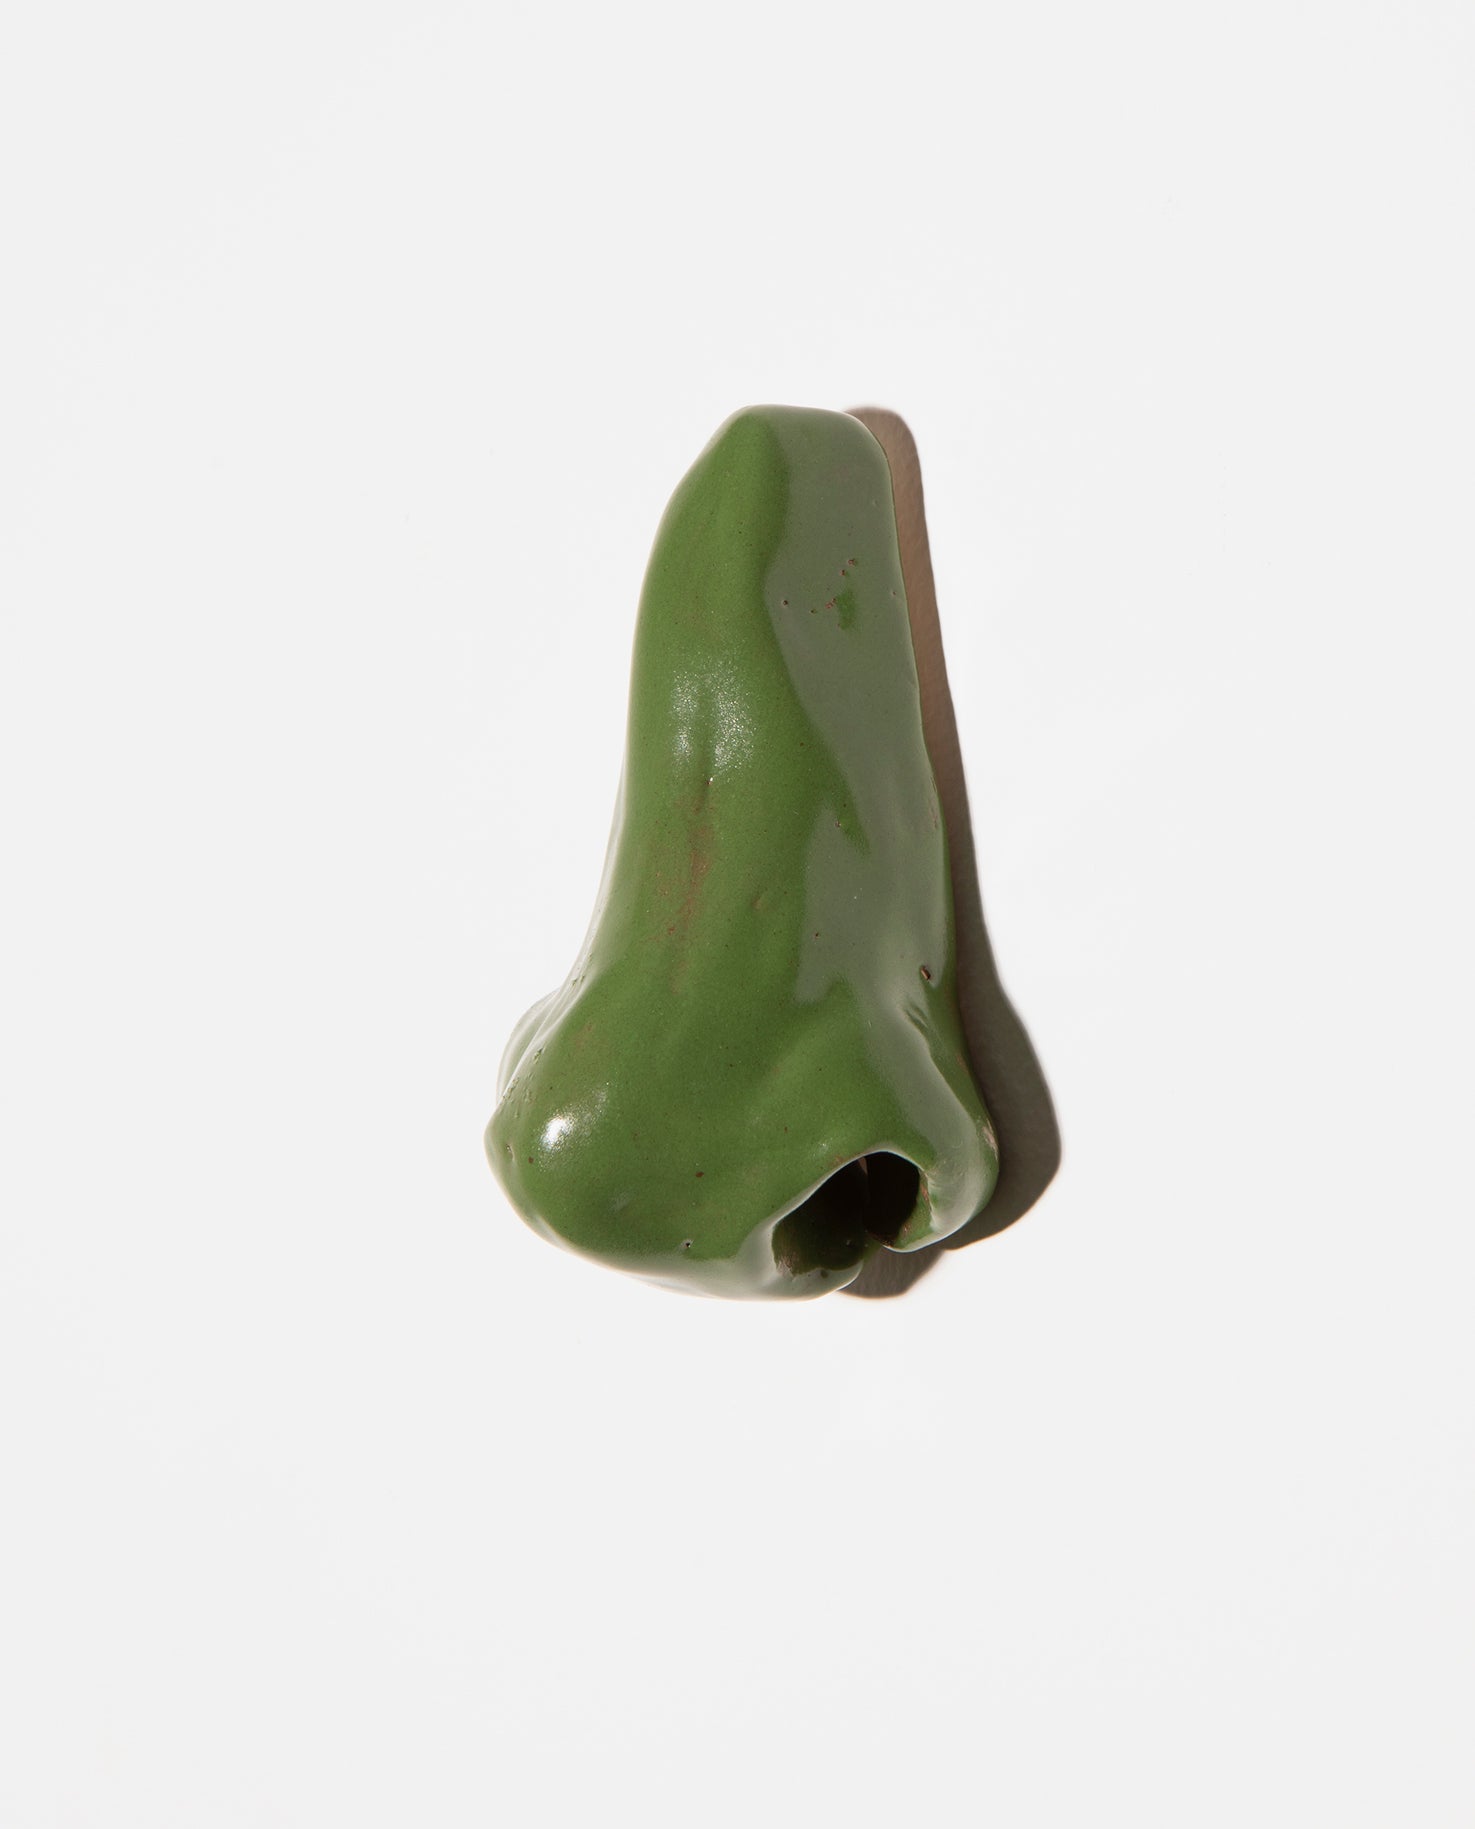 Petite sculpture. Nez en céramique grès émaillé vert gazon.